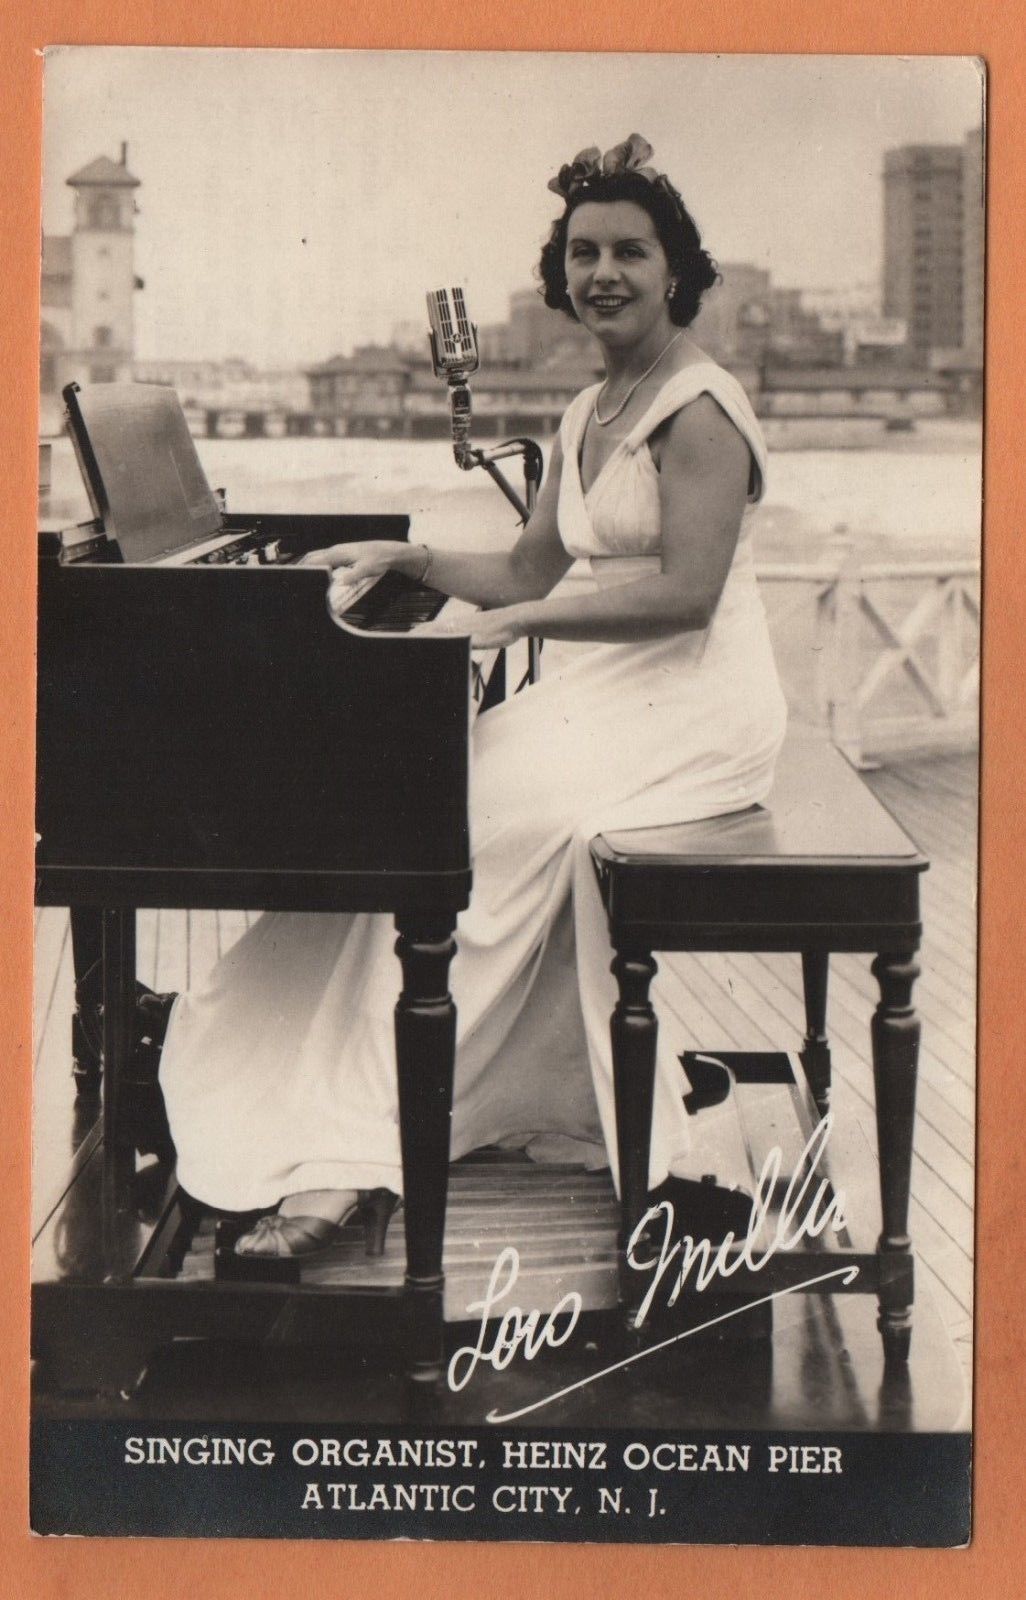 Atlantic City - Singing Organist at Heinz Ocean Pier